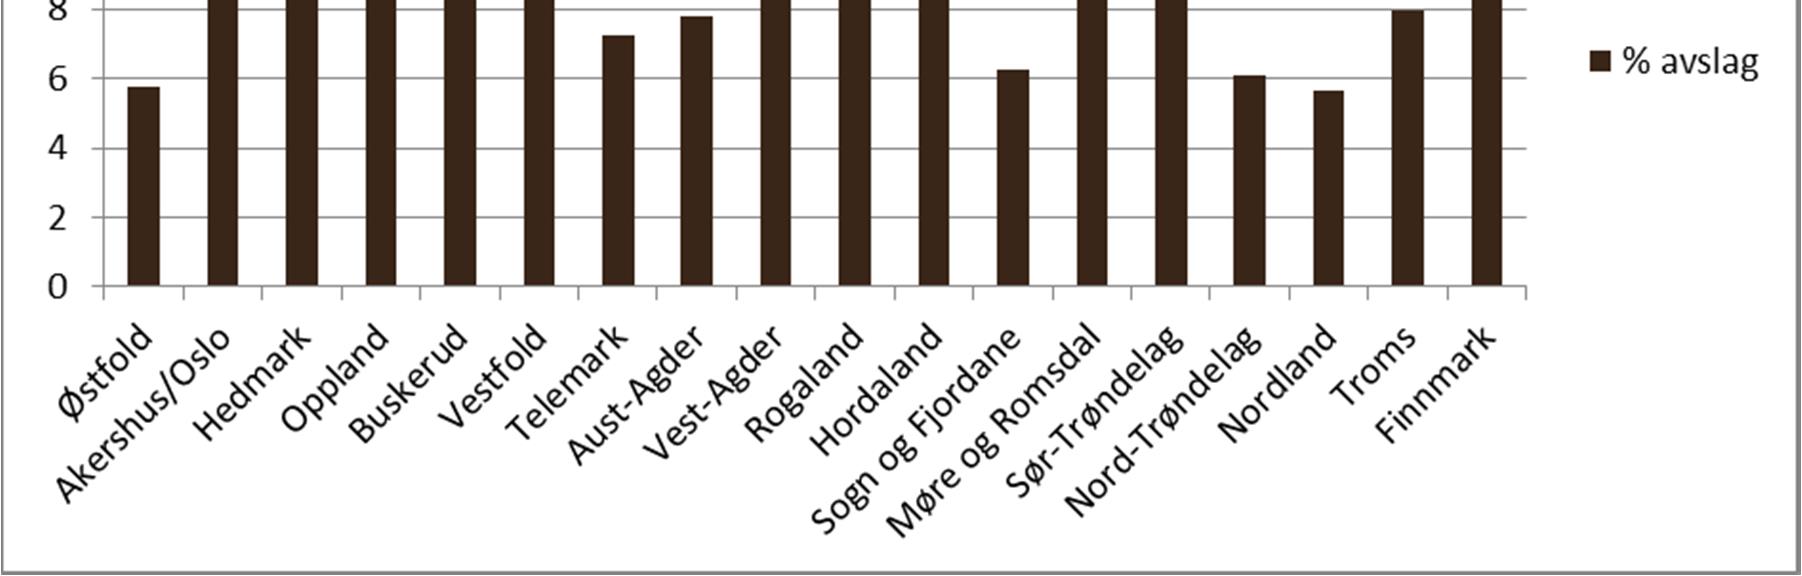 Figur 12: Gjennomsnittleg avslagsprosent i saker etter jordlova 12 i perioden 2006-2014 fordelt på fylka.